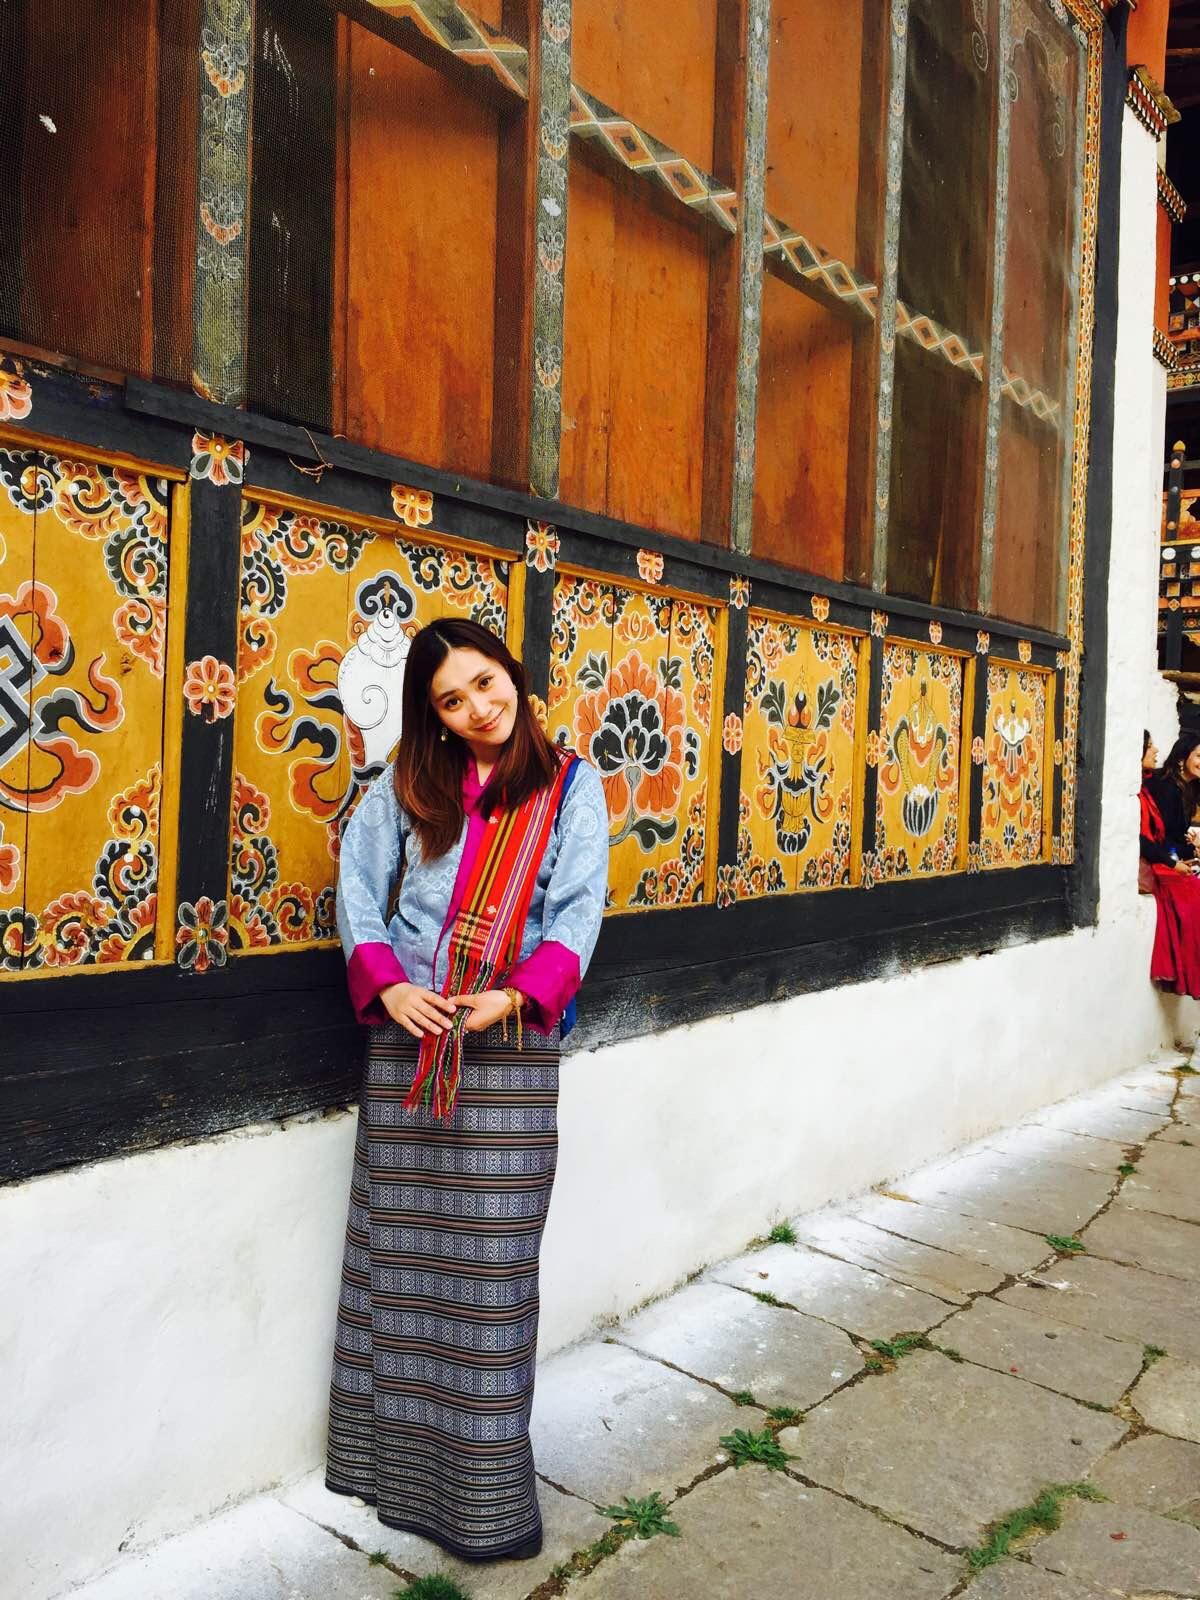 不丹衣服穿法女图片